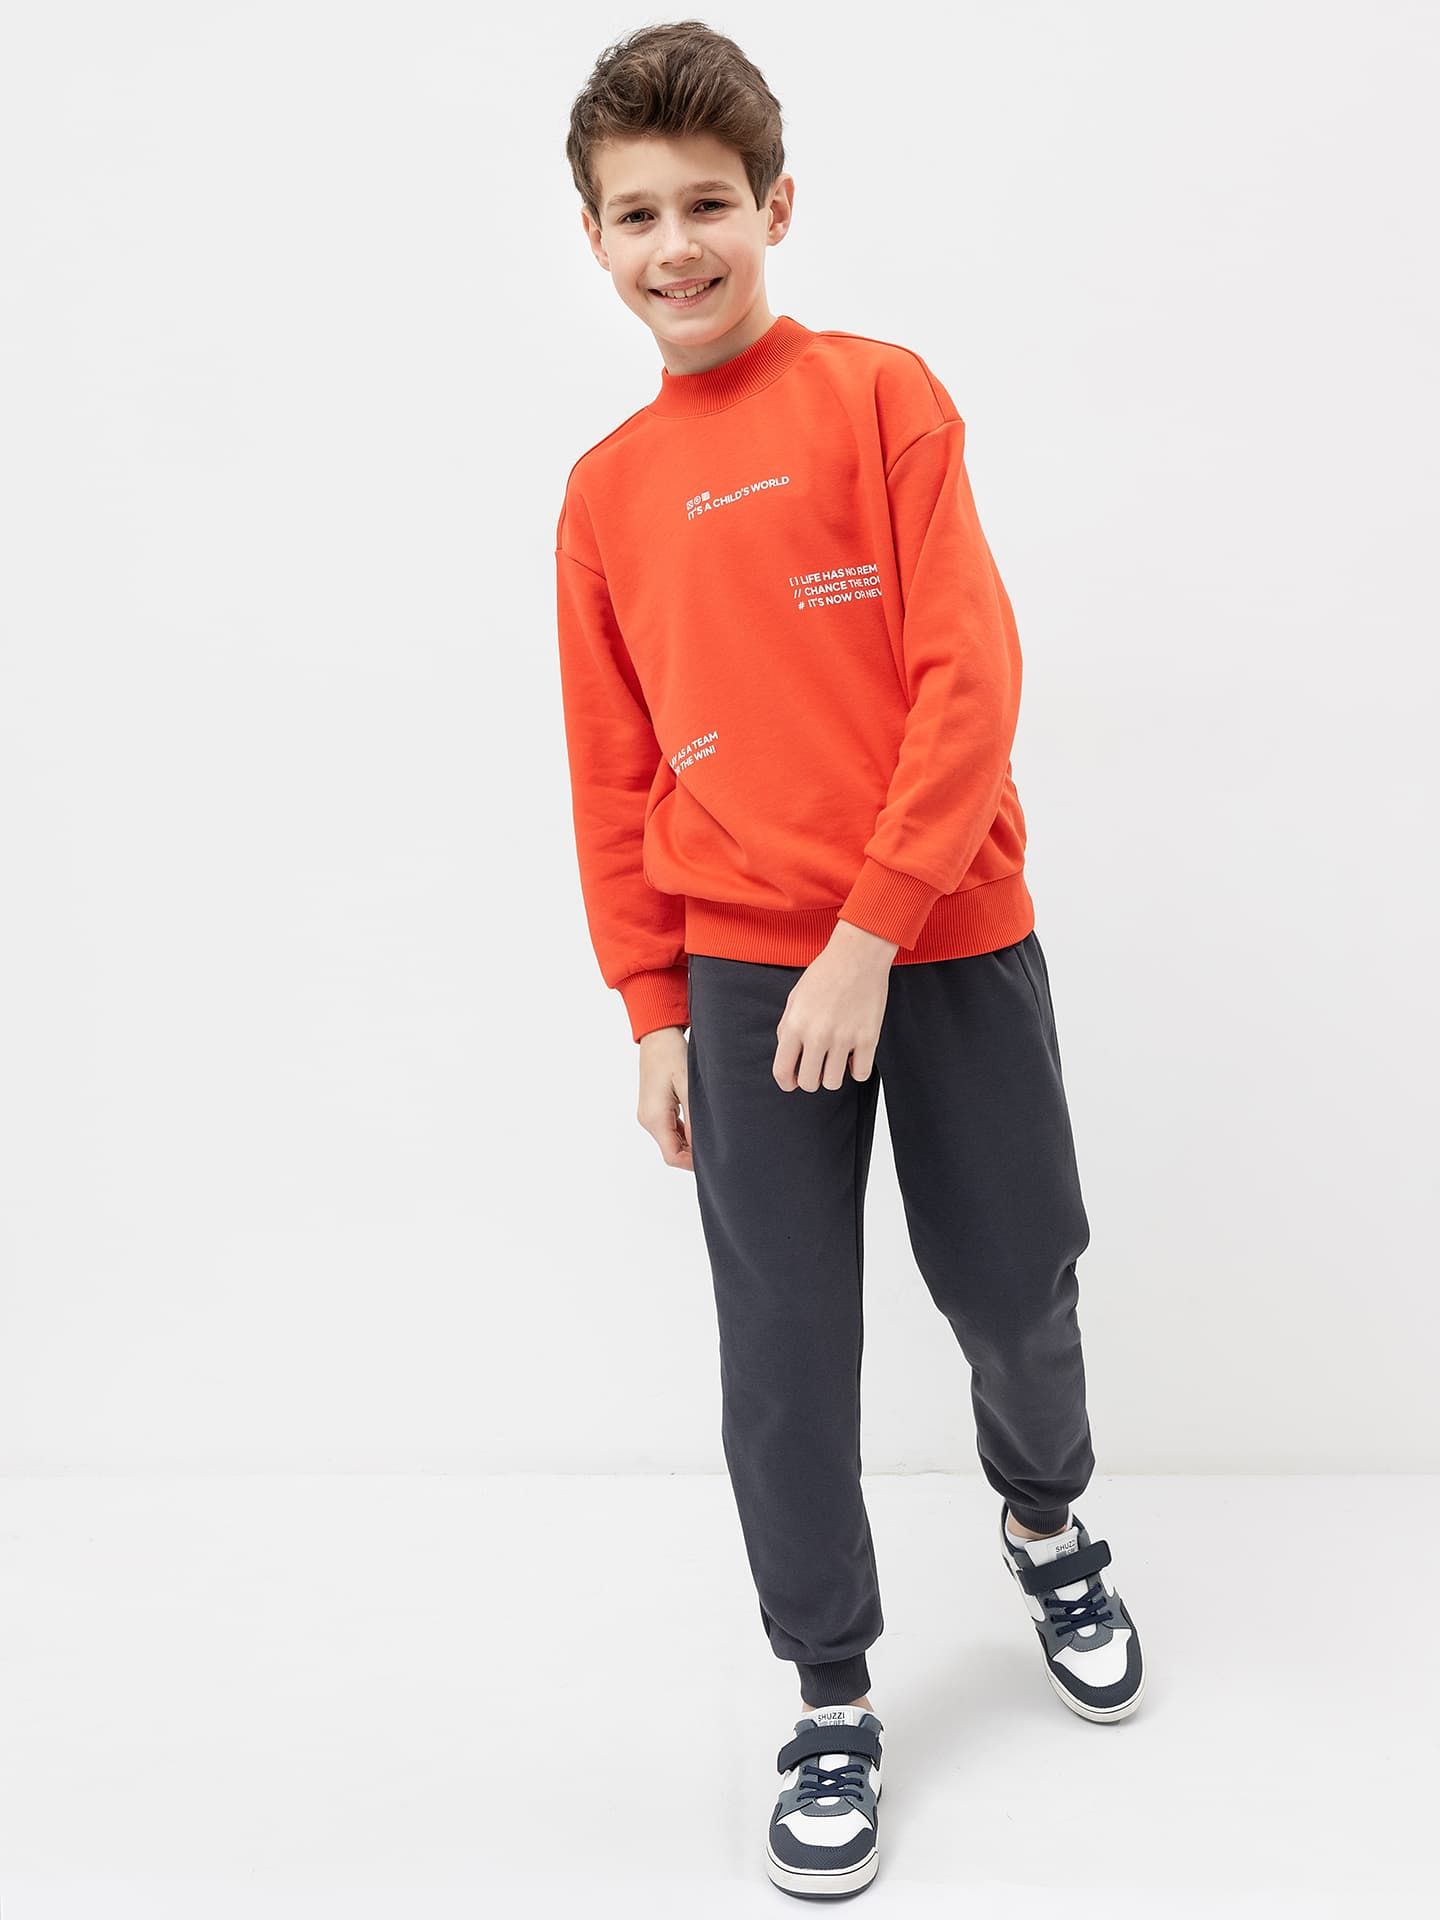 Комплект для мальчика (джемпер, брюки) в оранжево-графитовом цвете с печатью